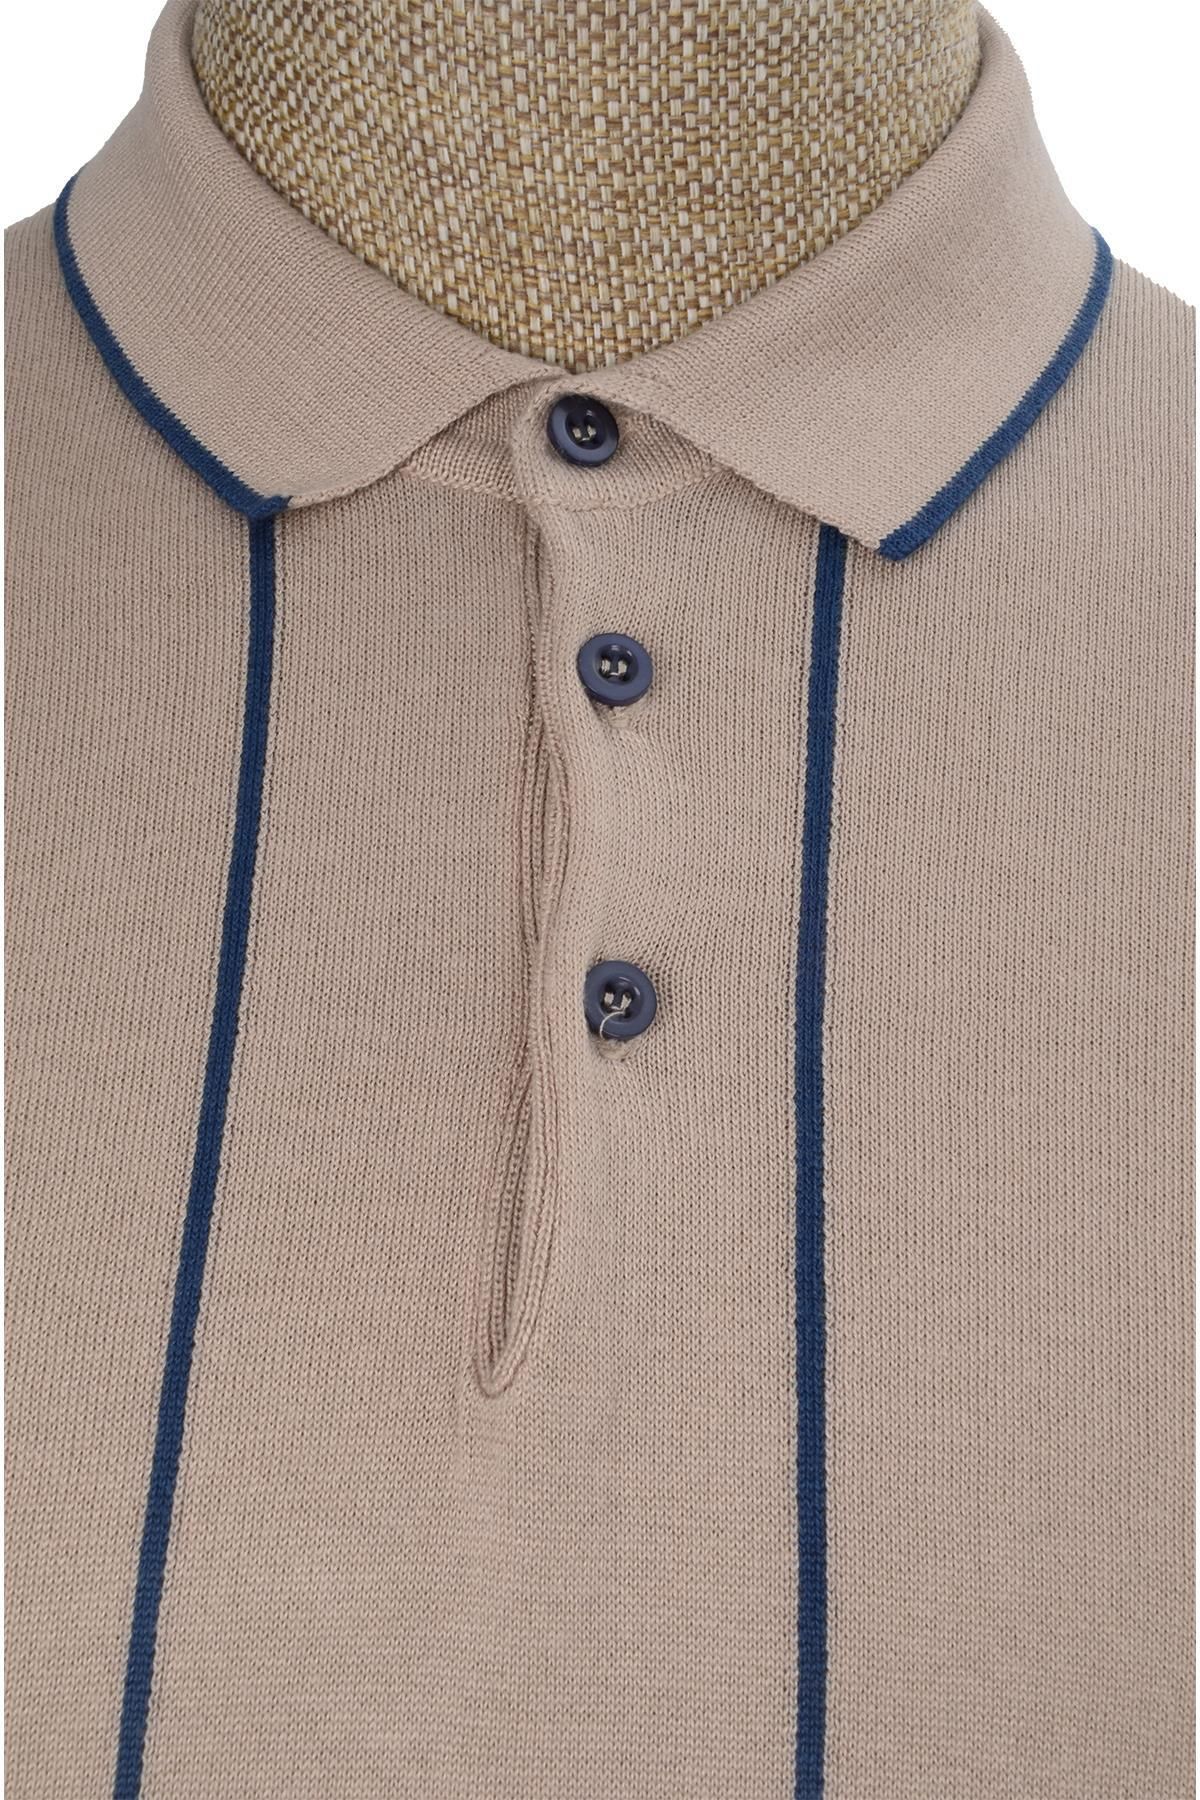 Cengiz İnler Cengiz Inler Çizgili Polo Yaka Düğmeli Merserize Erkek Triko T-shirt